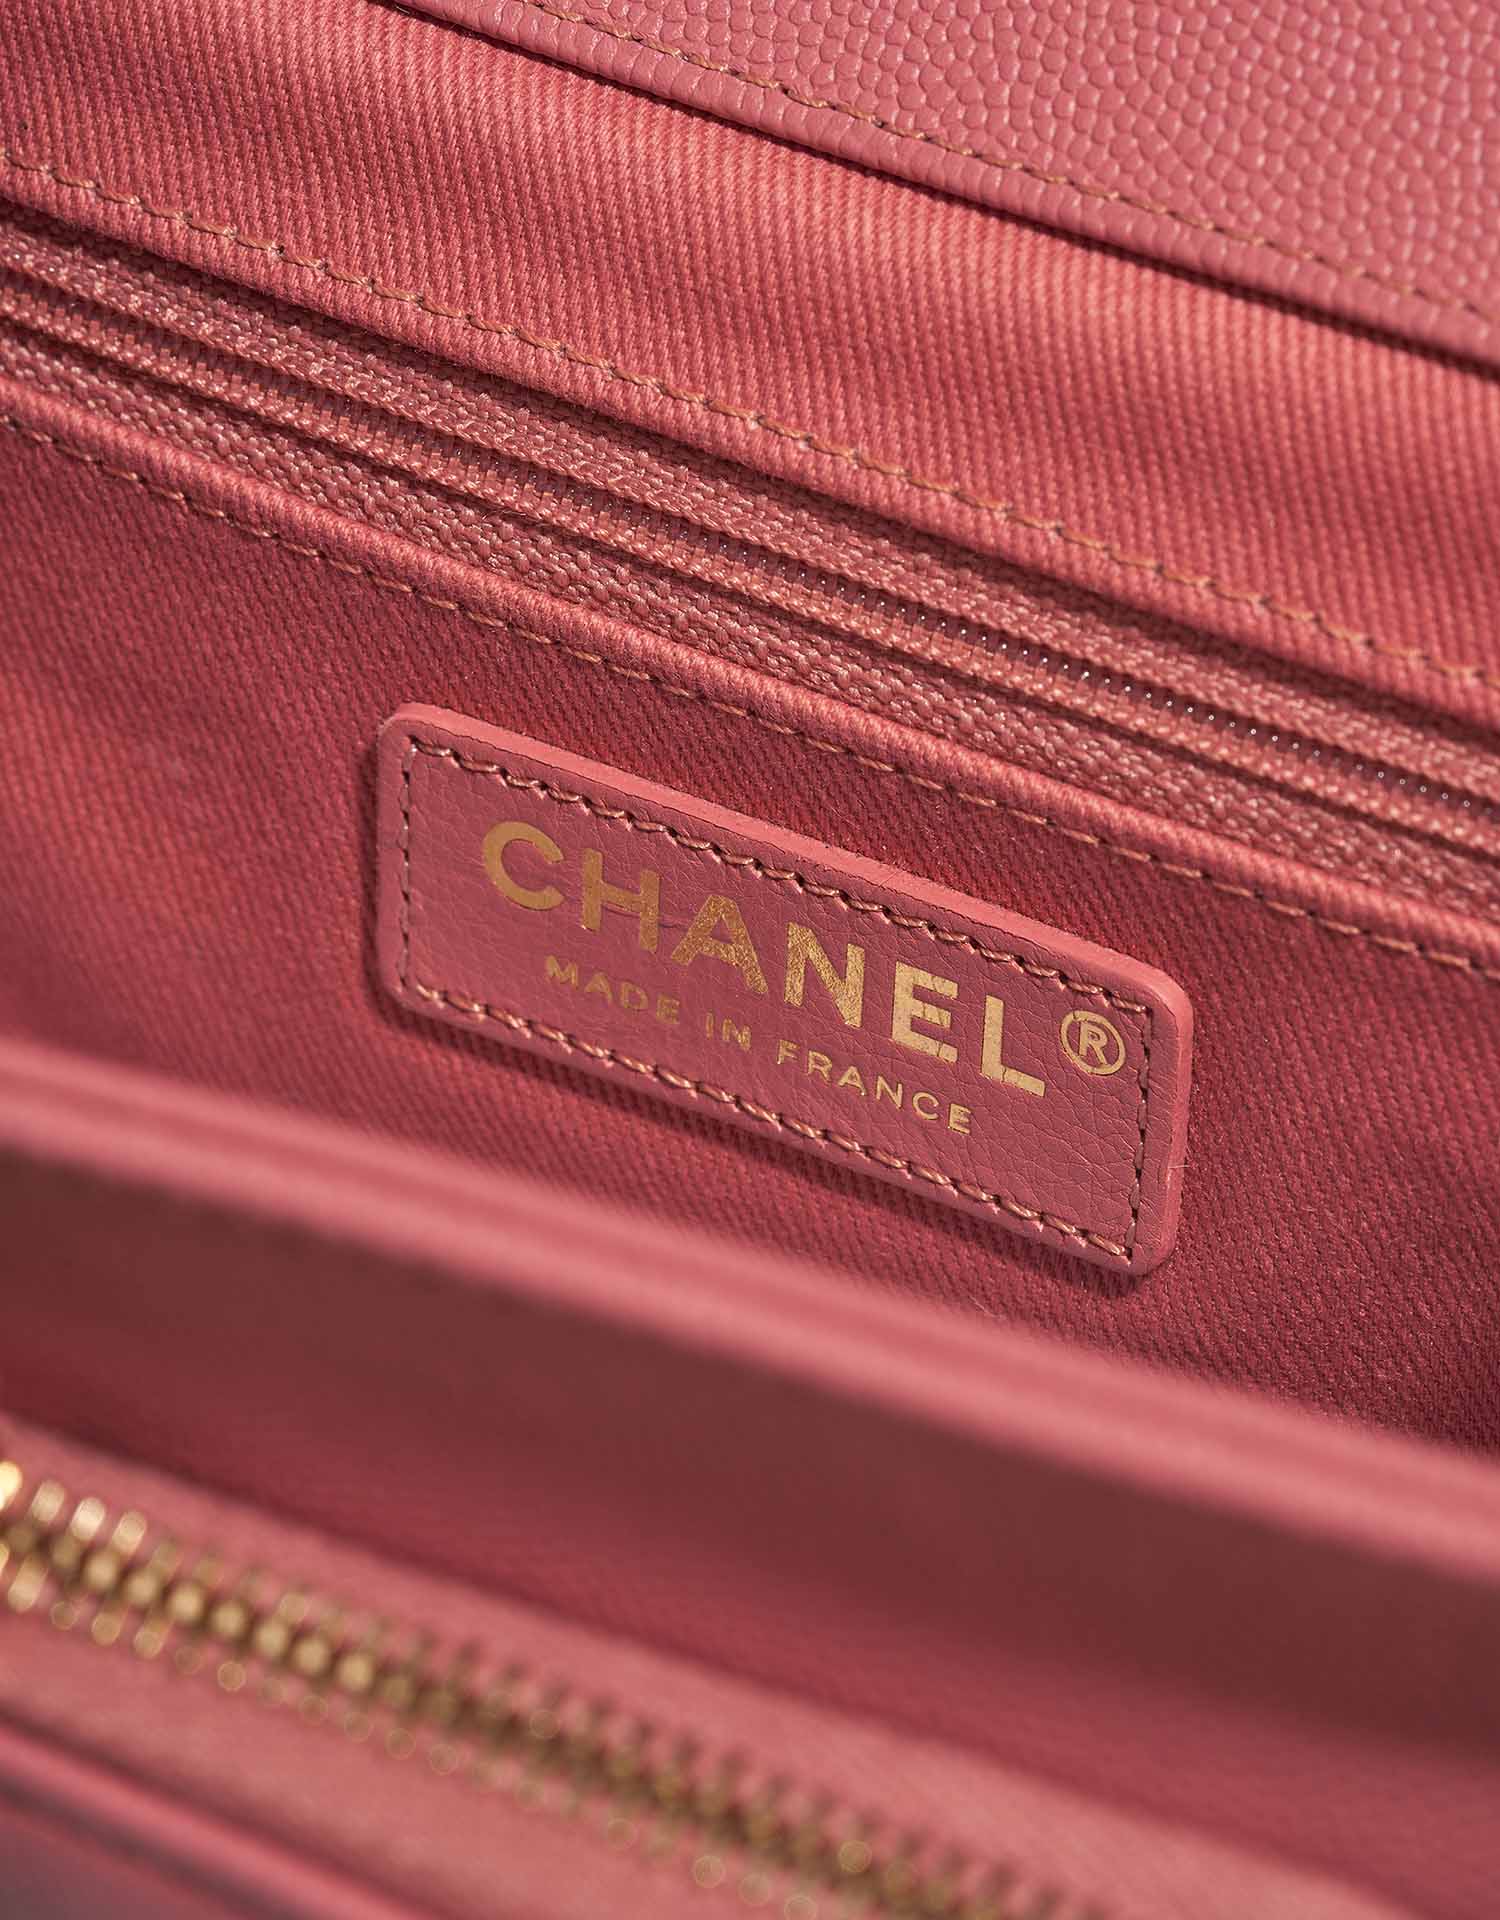 Chanel Business Affinity Medium Coral Pink Logo | Verkaufen Sie Ihre Designer-Tasche auf Saclab.com